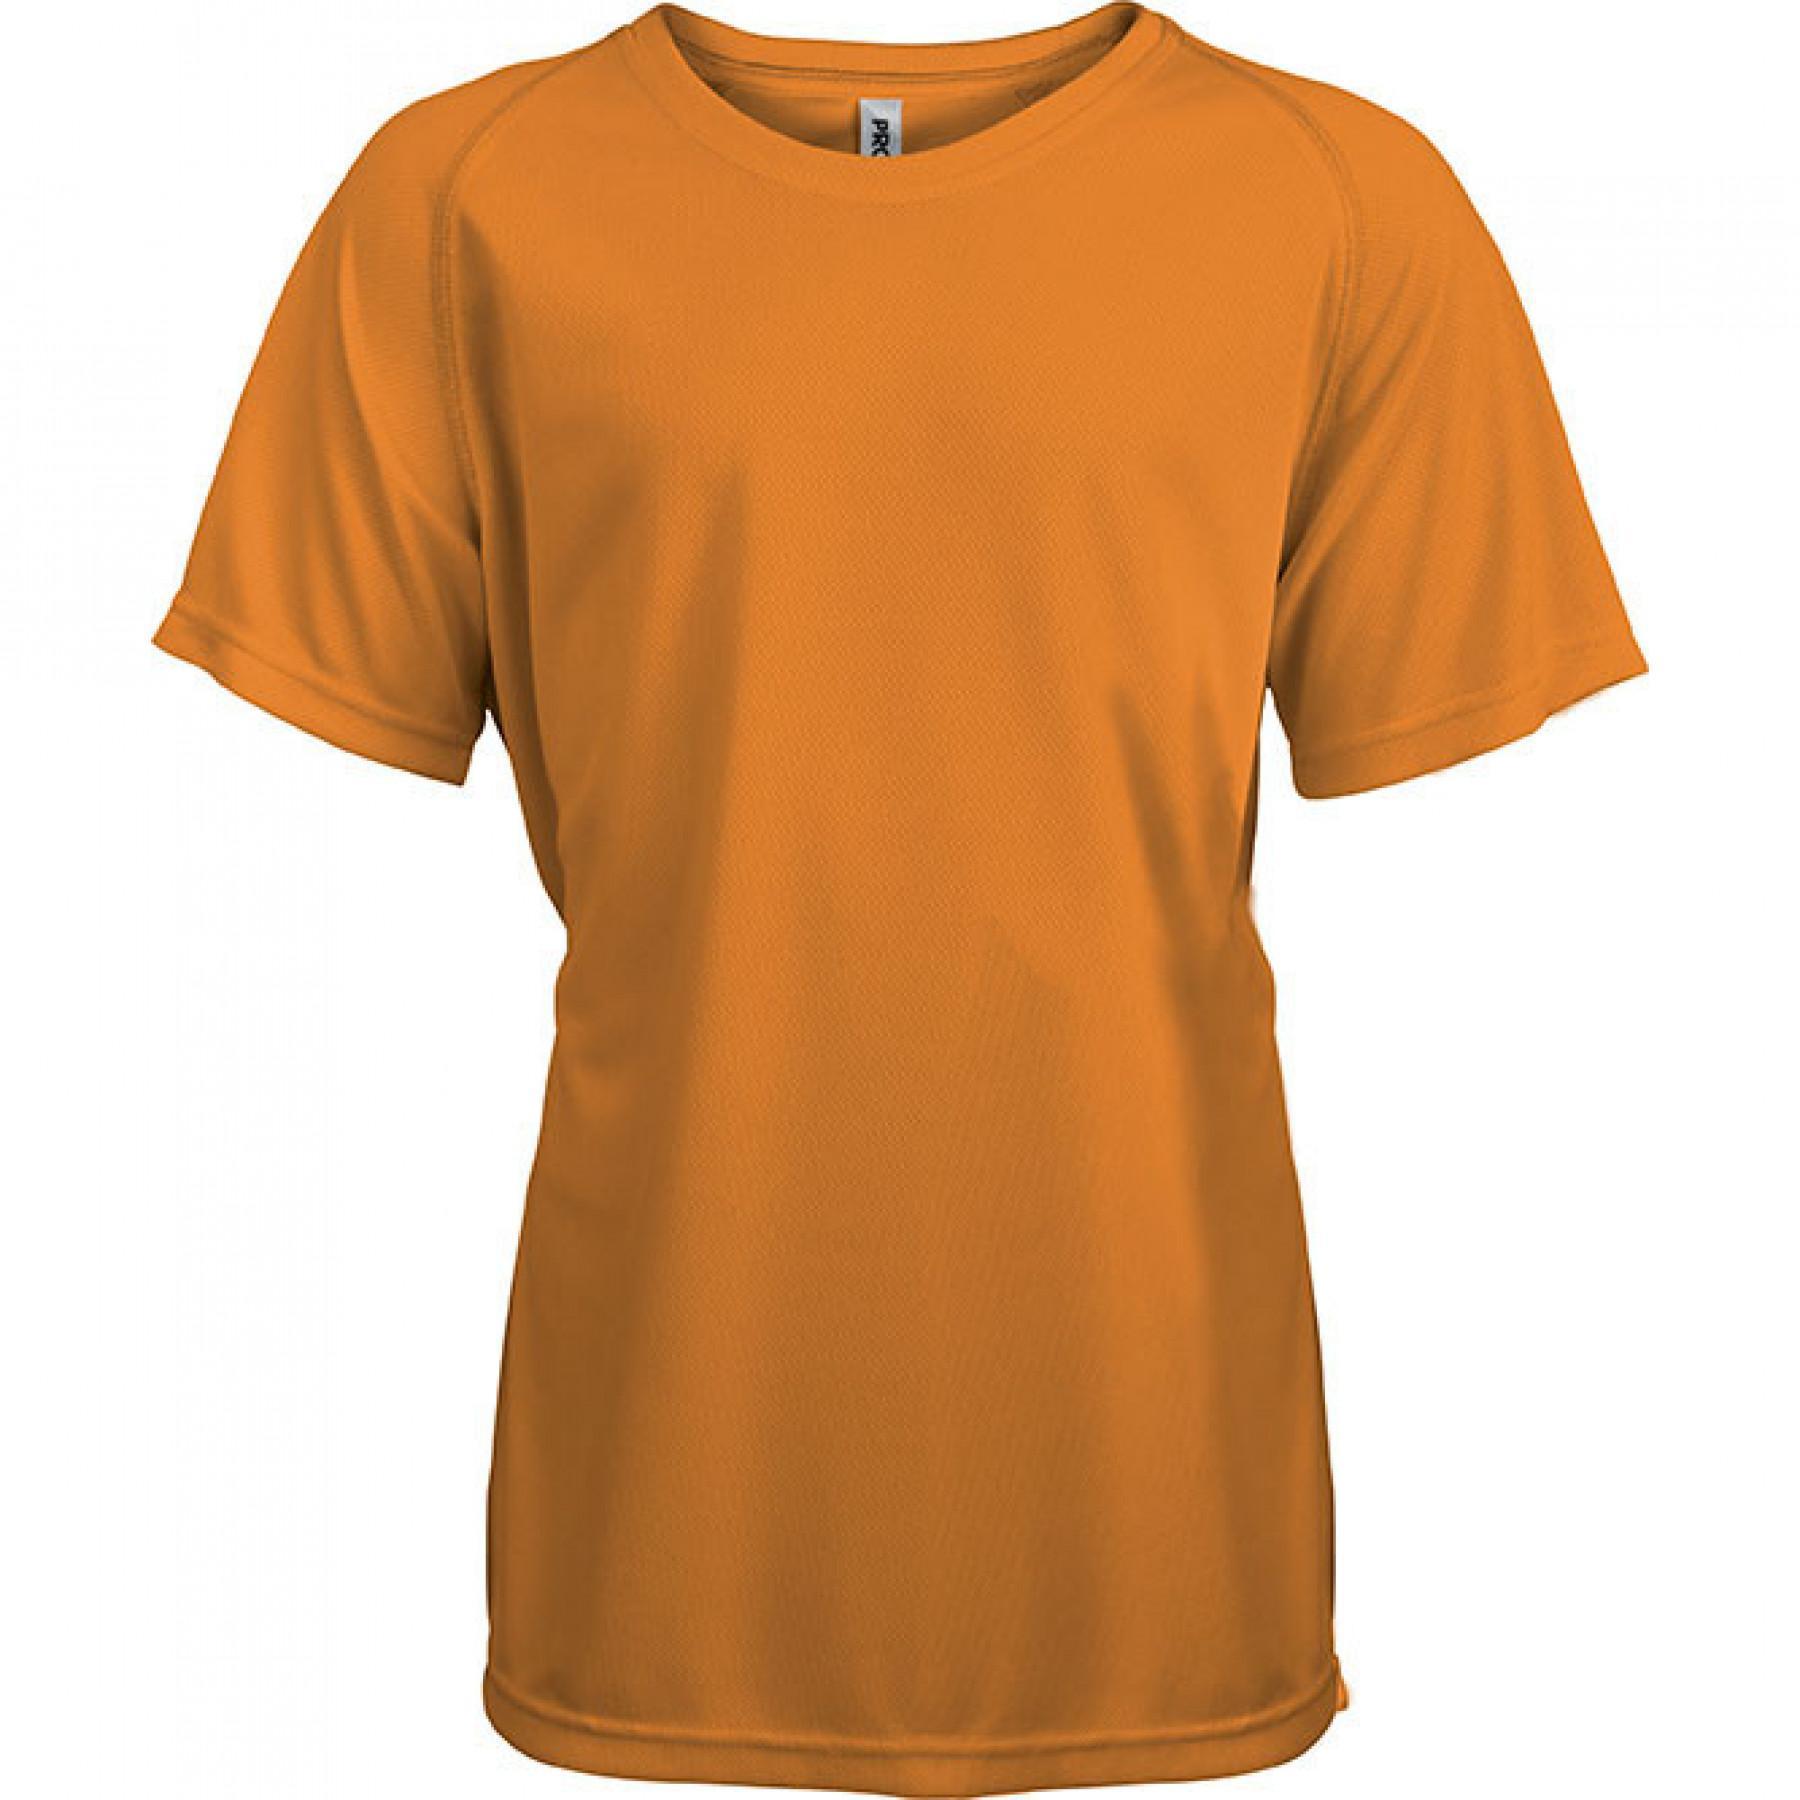 Short sleeve t-shirt Proact Sport